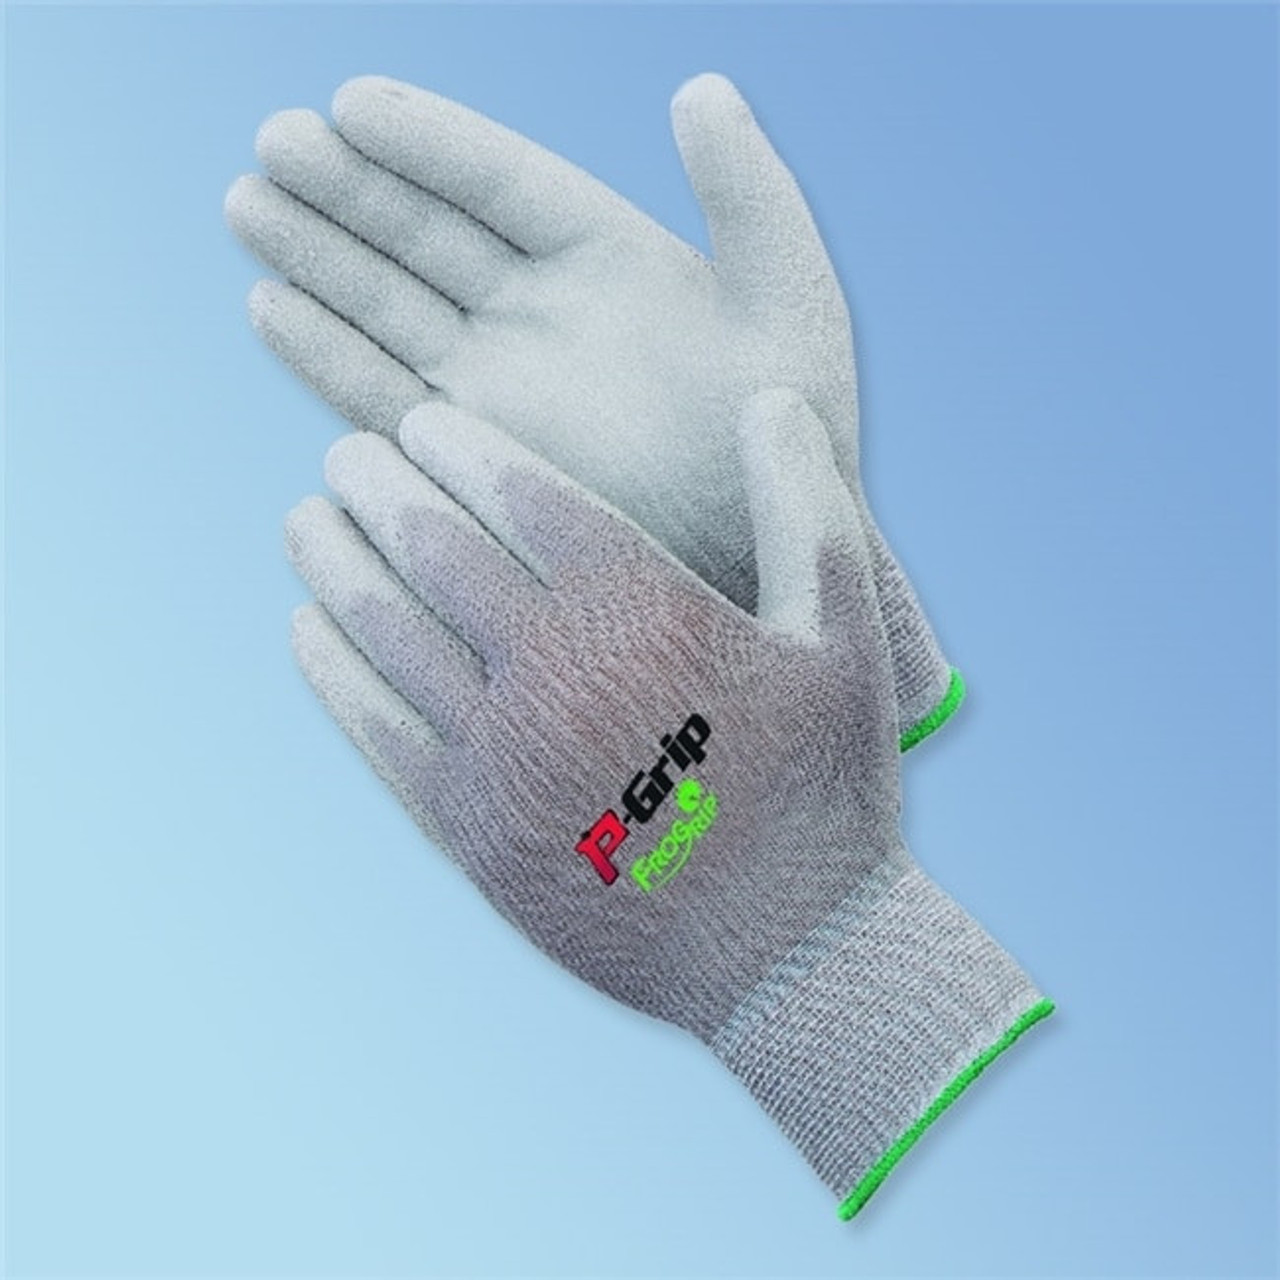 Polyurethane Palm Coated Gloves - 12 Pairs